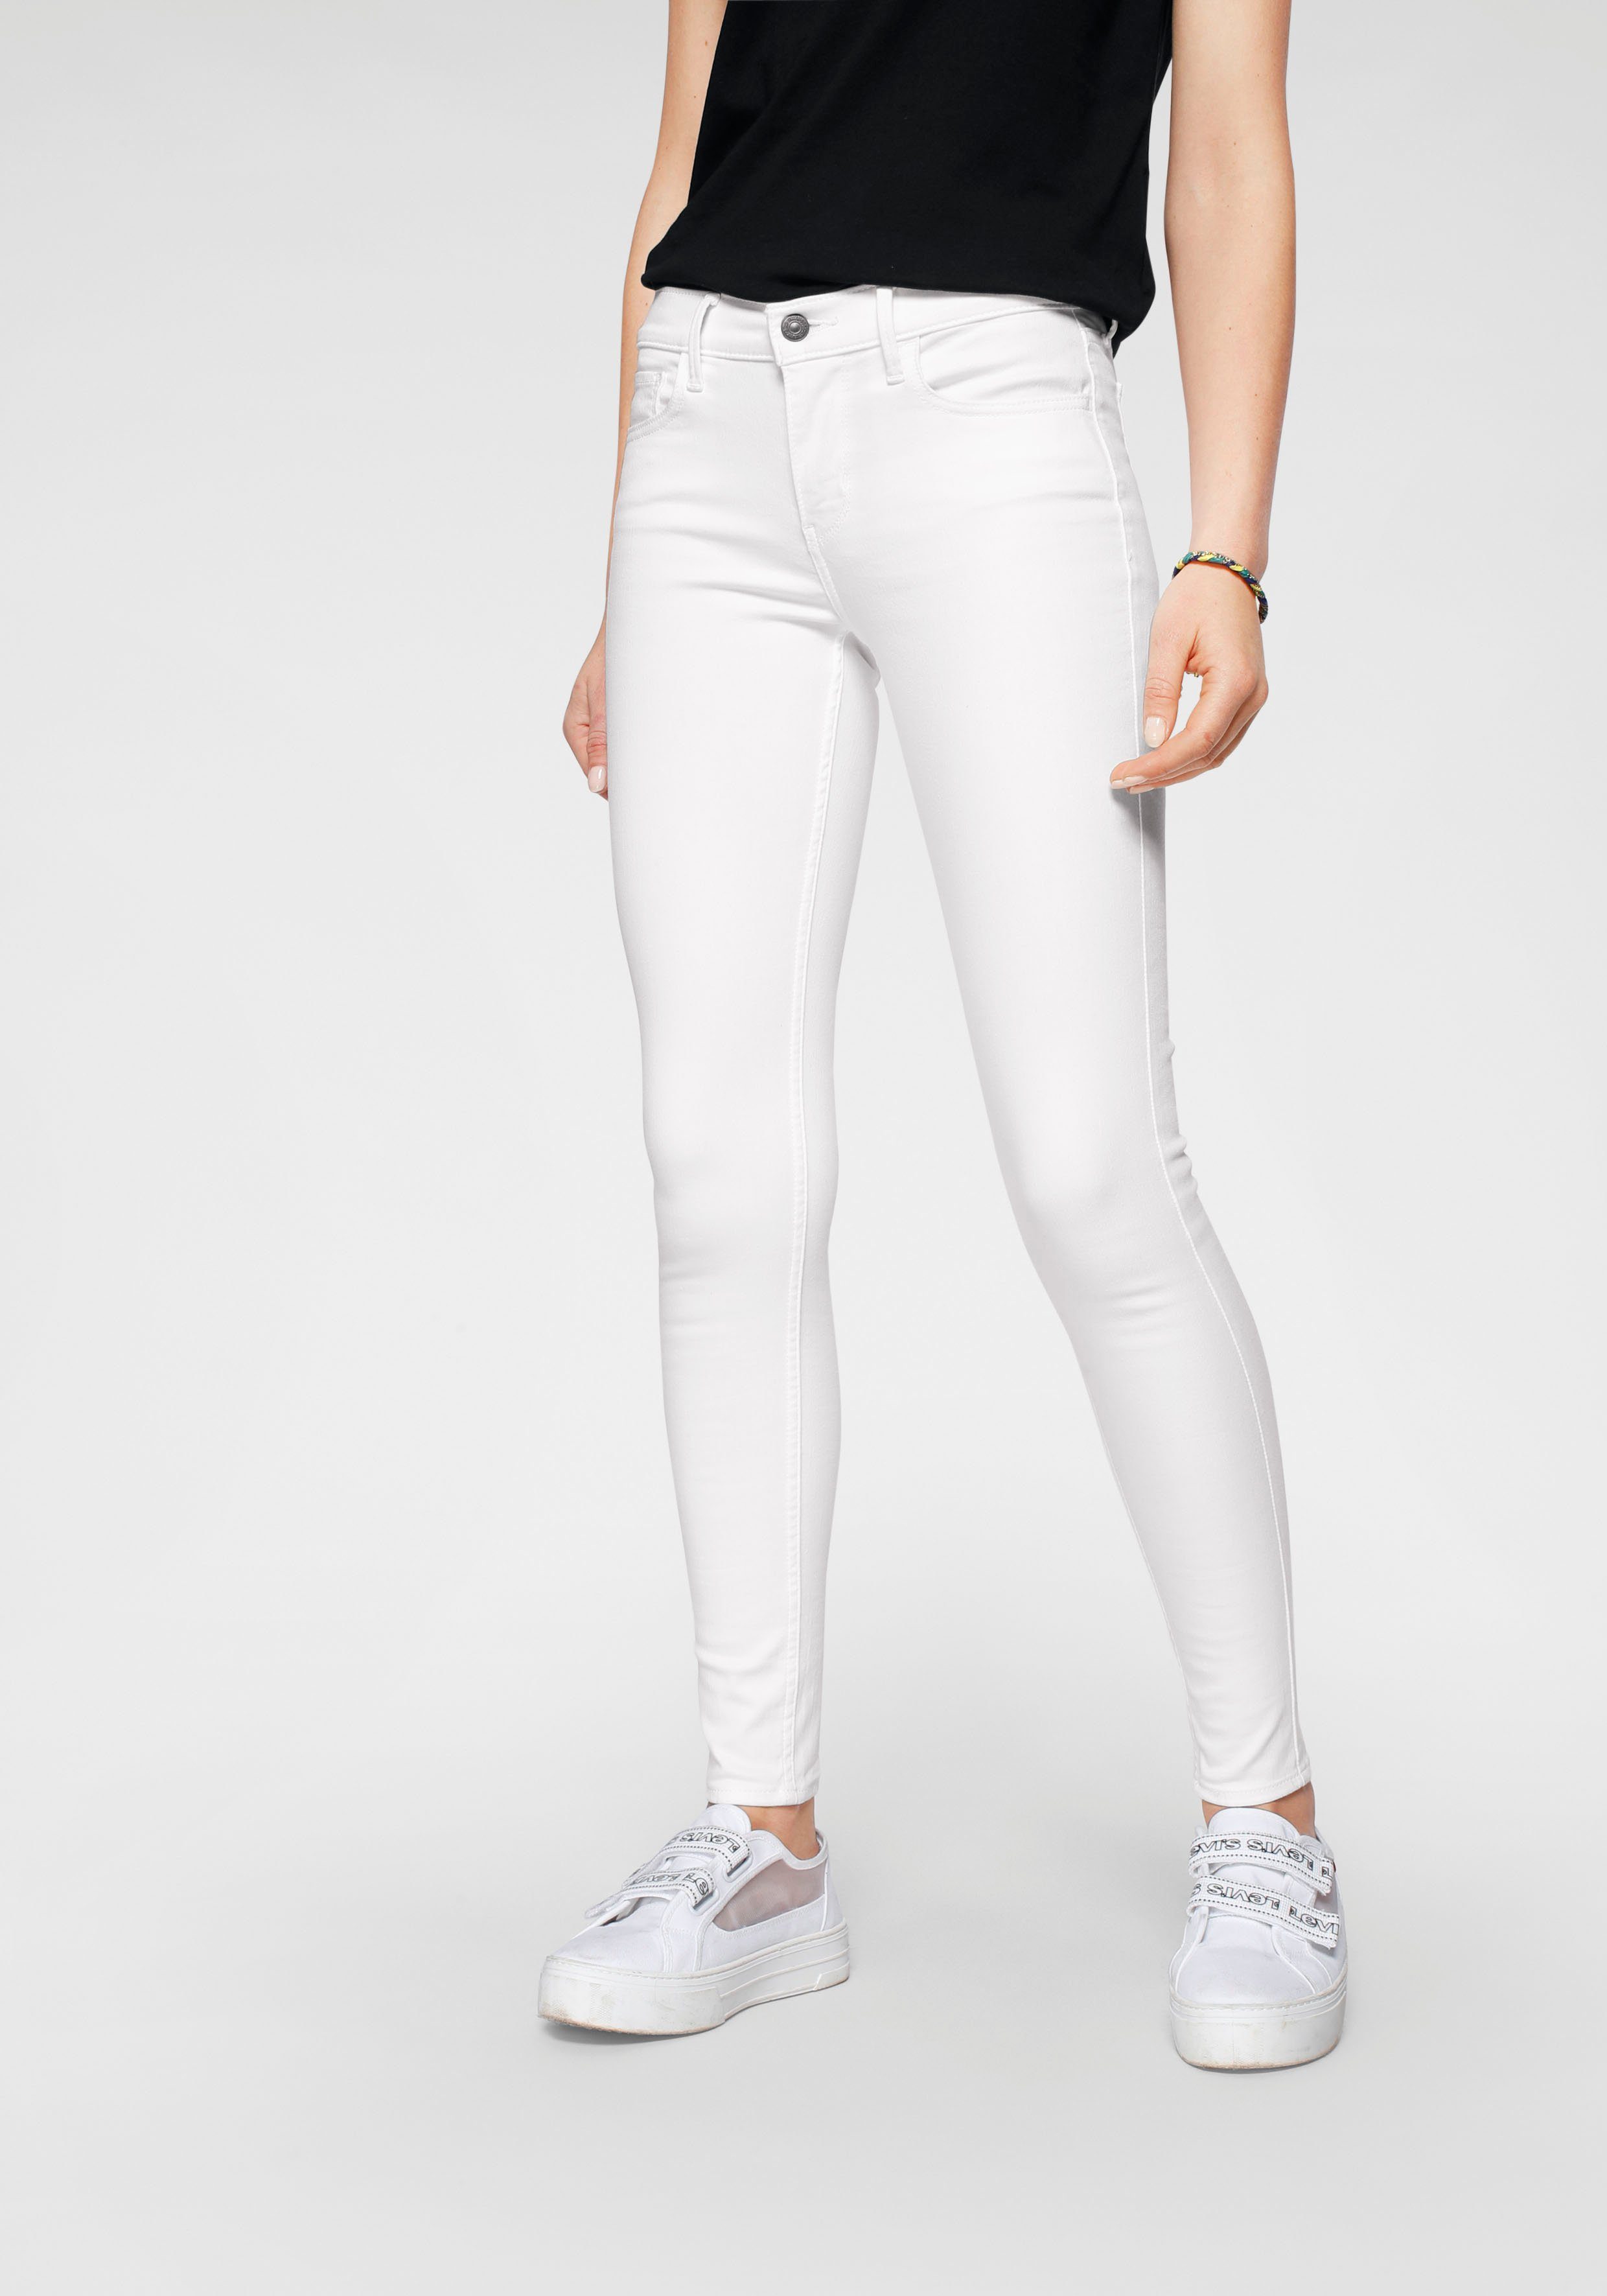 Weiße Skinny-Jeans online kaufen | OTTO